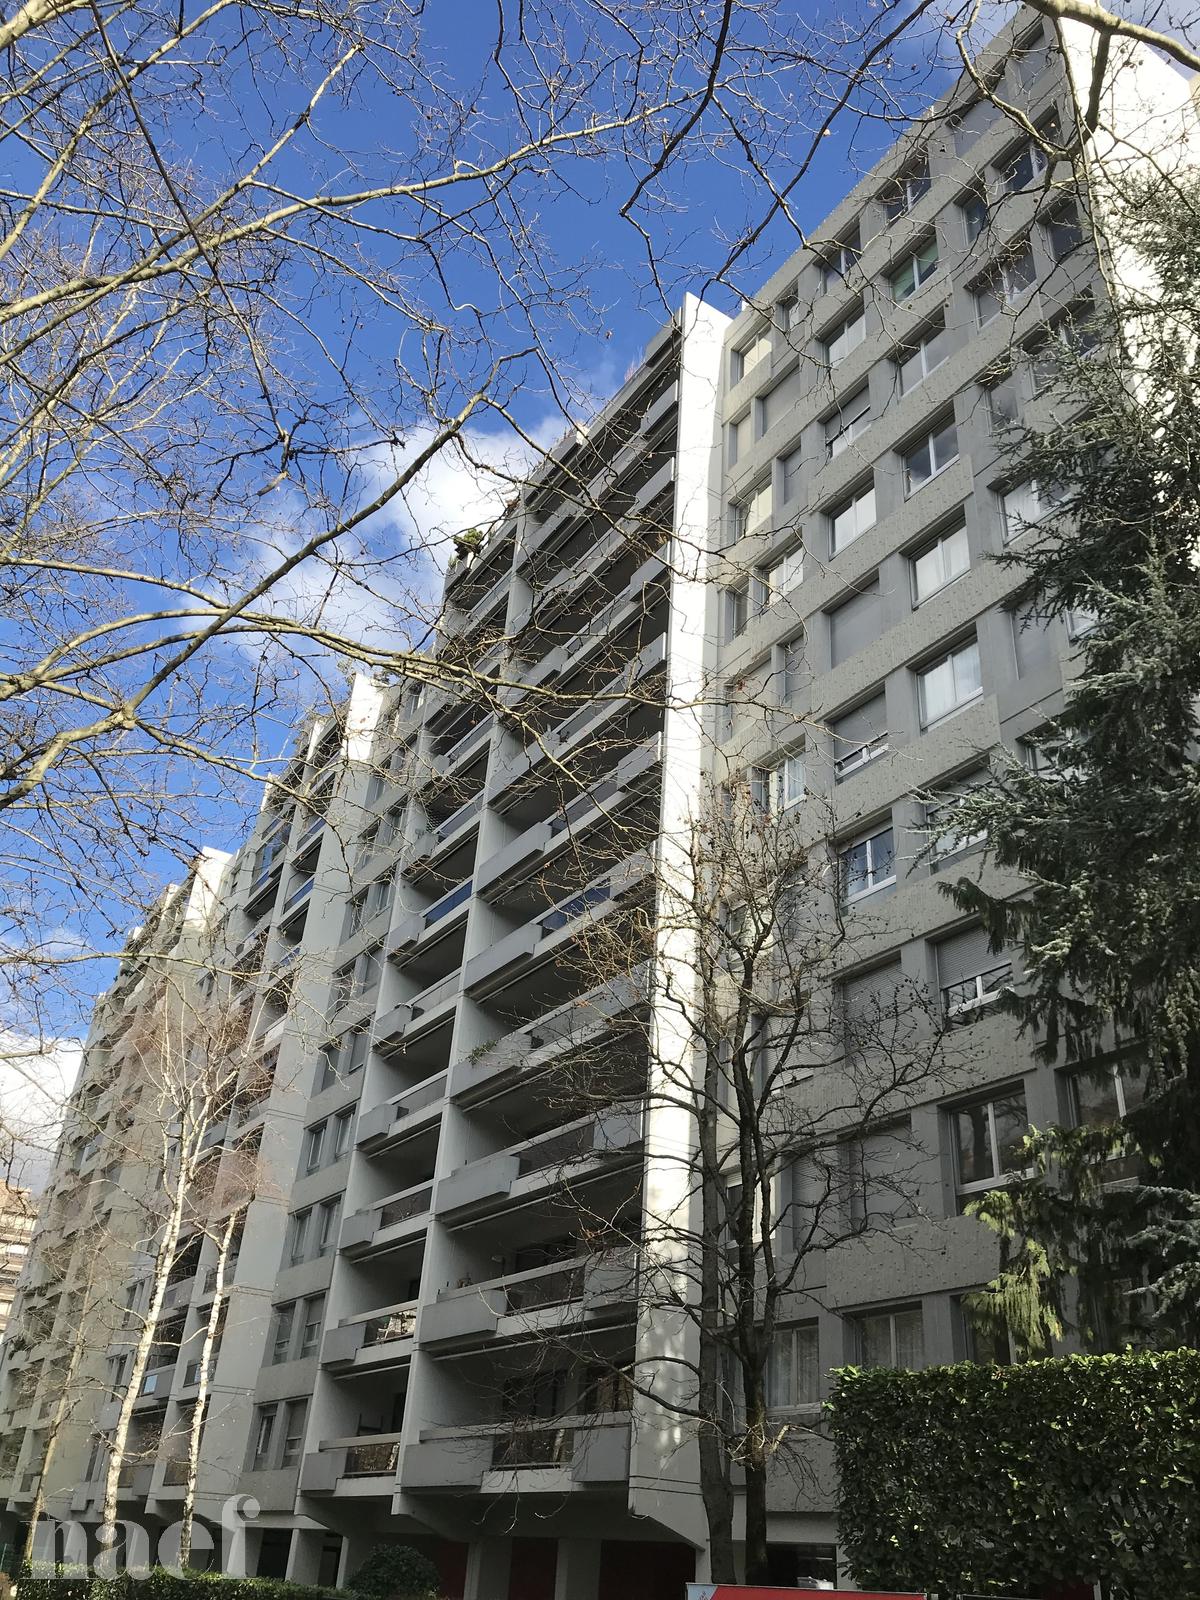 À louer : Appartement 5 Pieces Genève - Ref : pOWzcG1w | Naef Immobilier